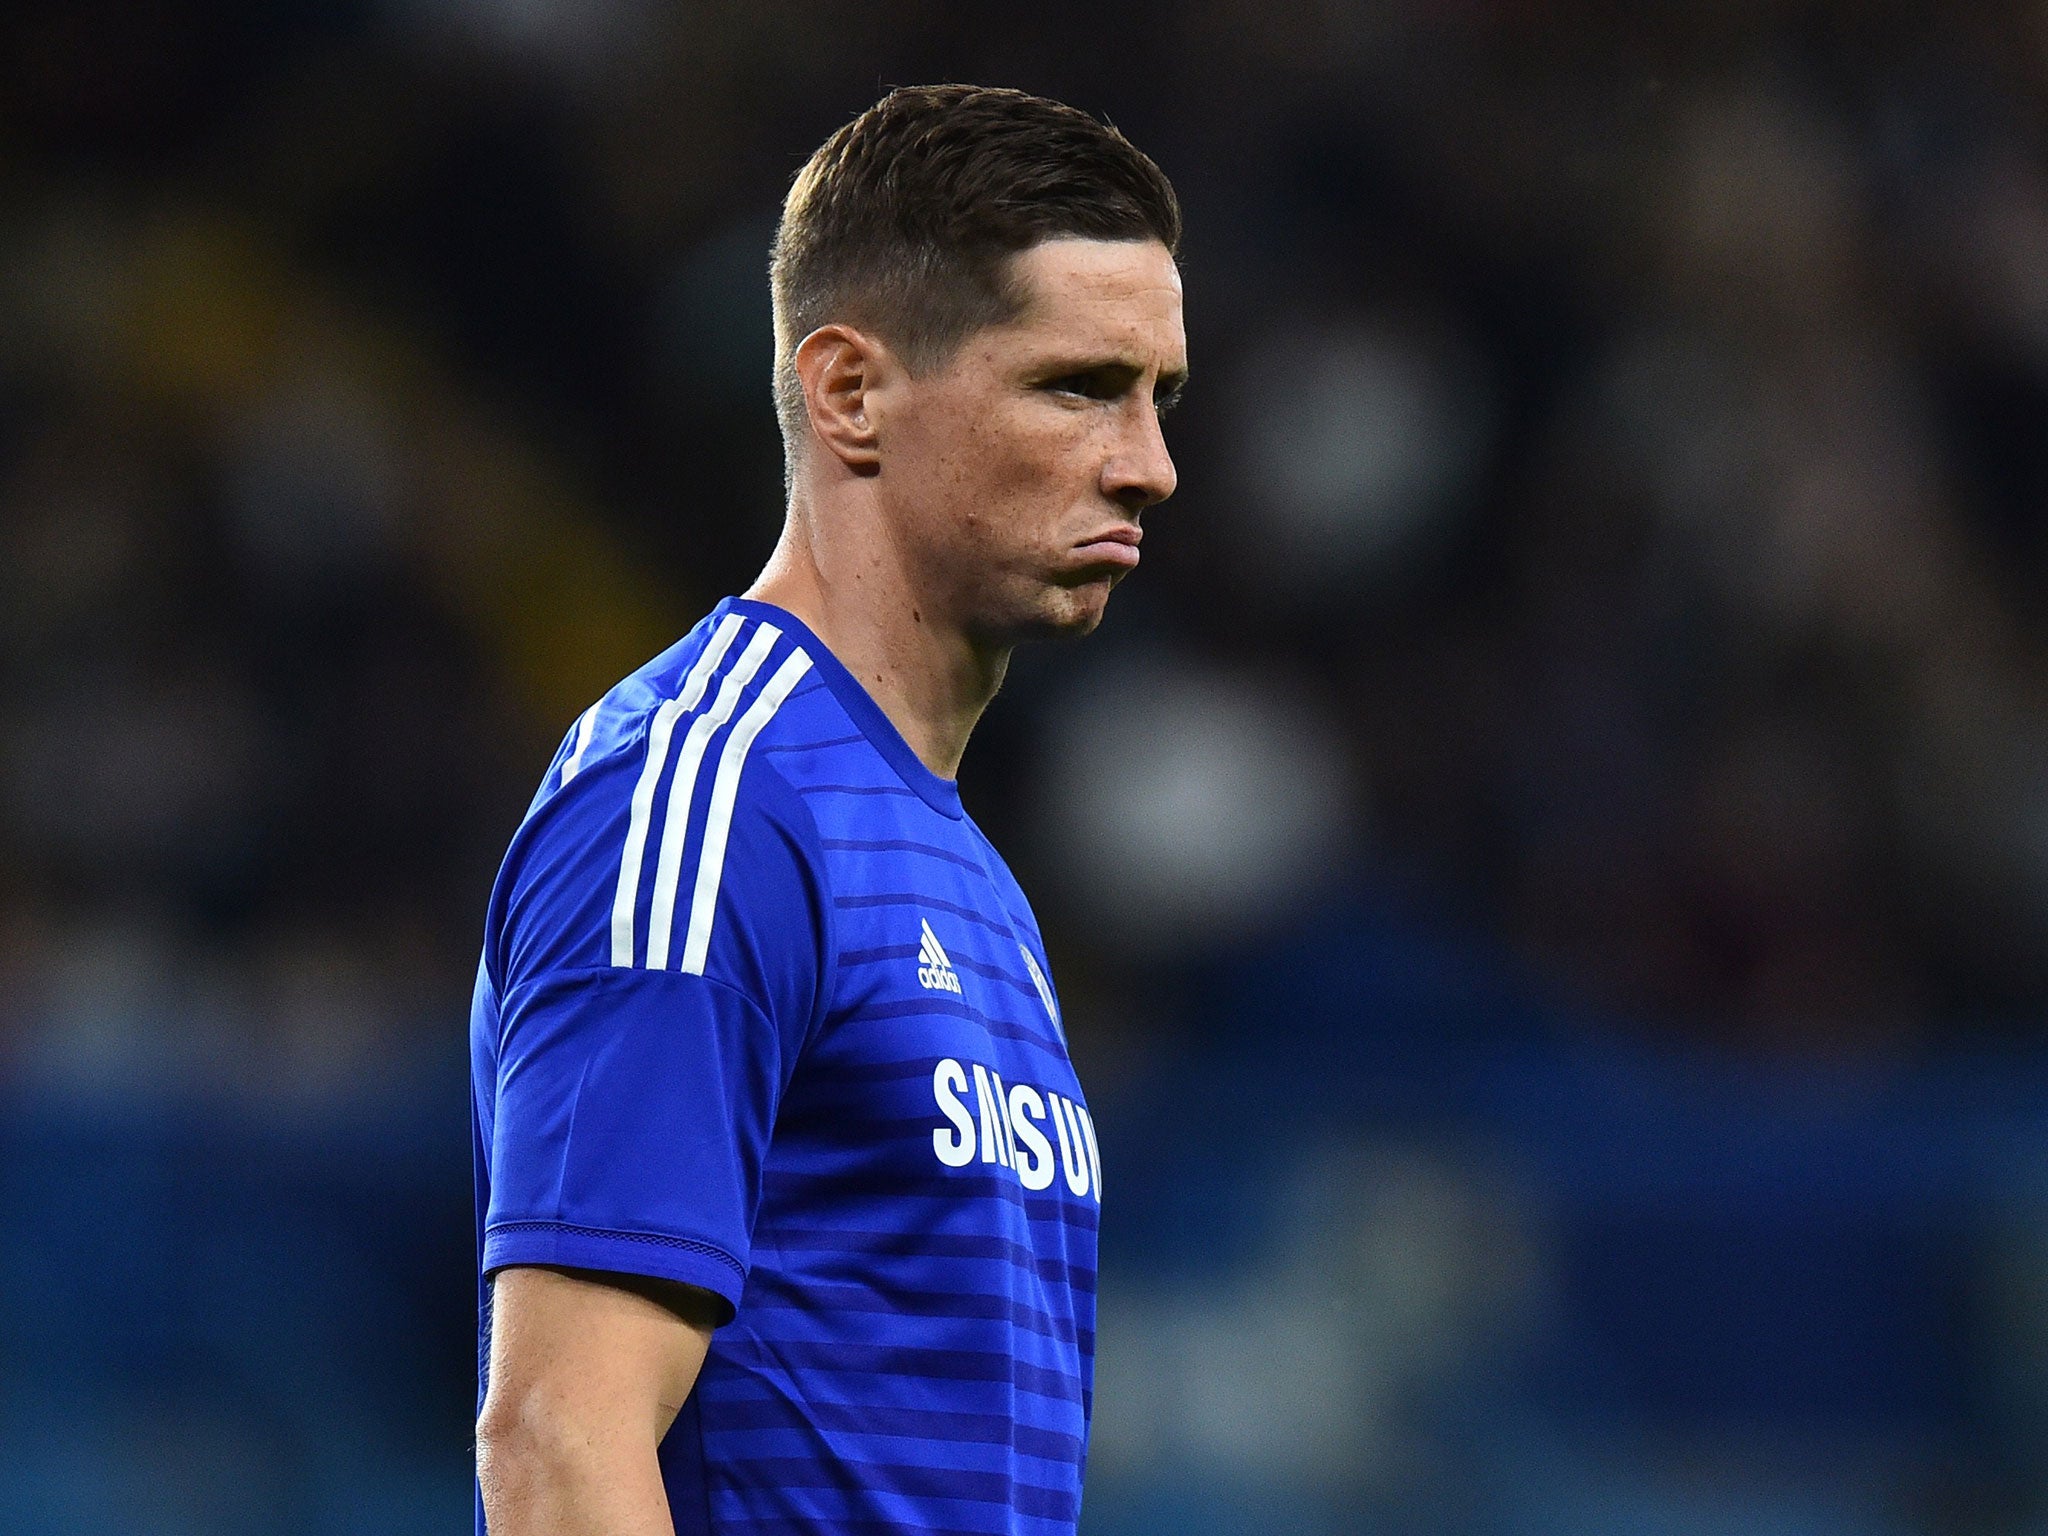 Fernando Torres has left Chelsea